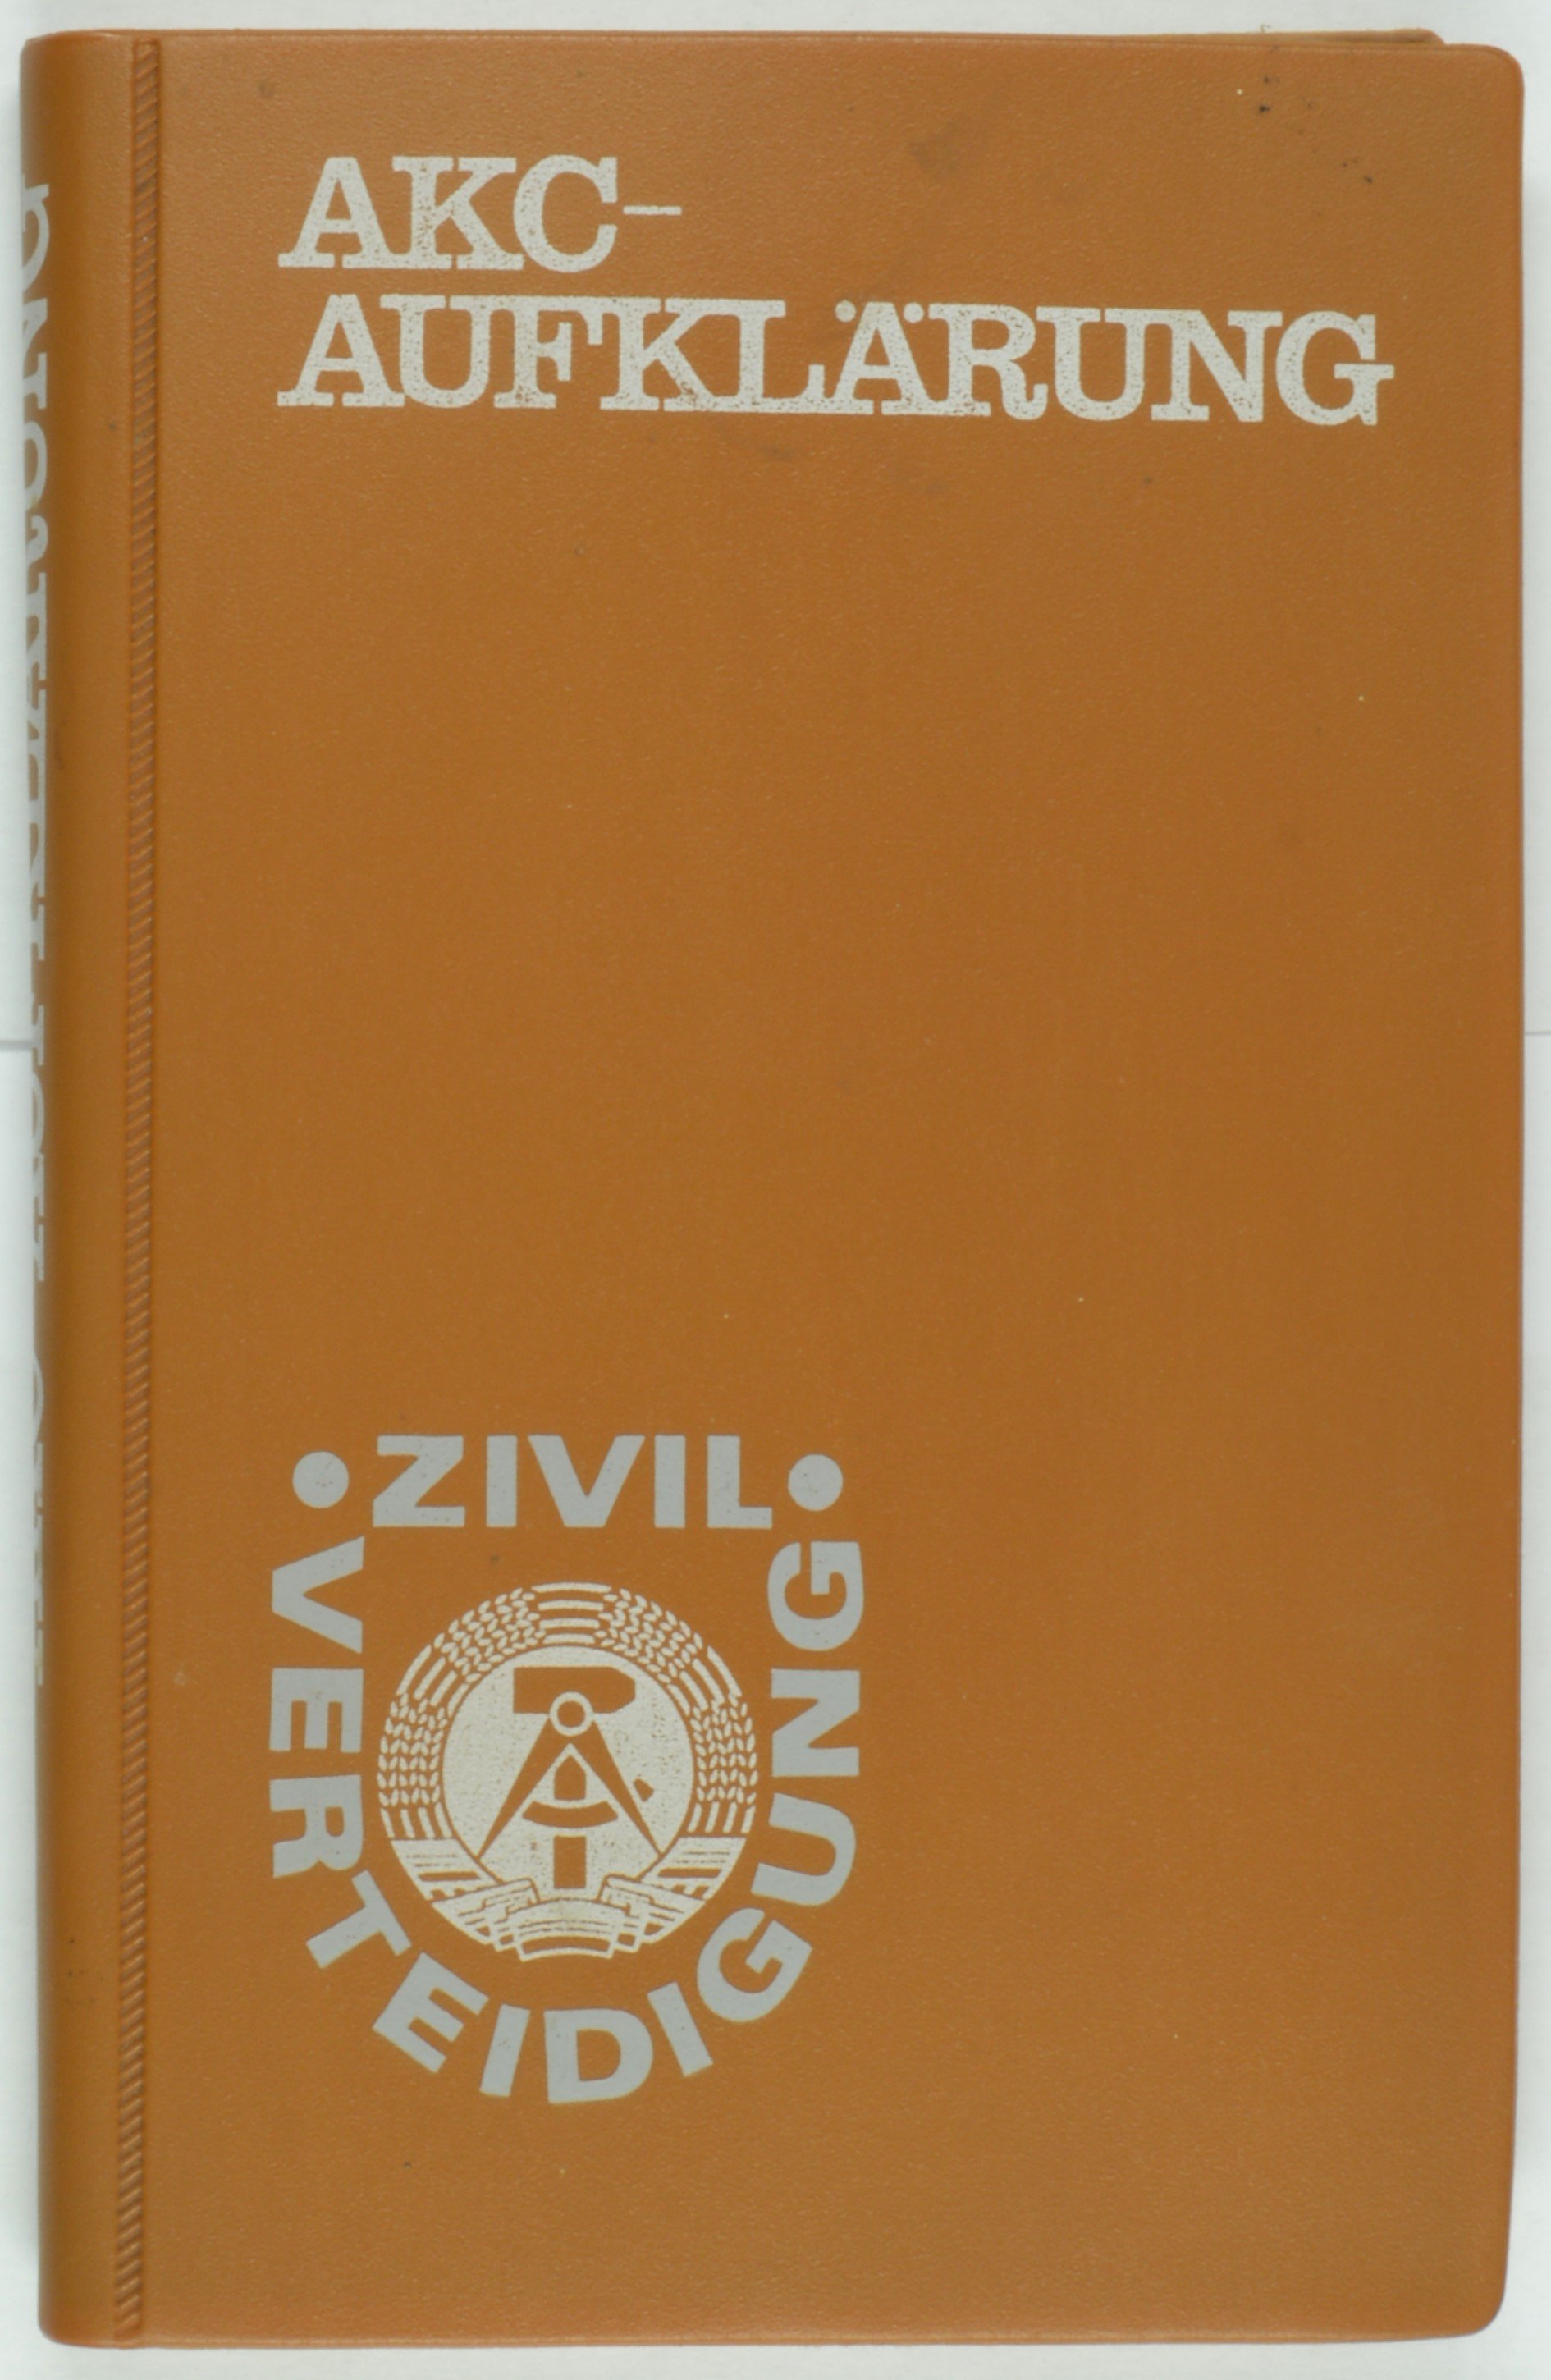 Buch "AKC-Aufklärung Zivilverteidigung" (DDR Geschichtsmuseum im Dokumentationszentrum Perleberg CC BY-SA)